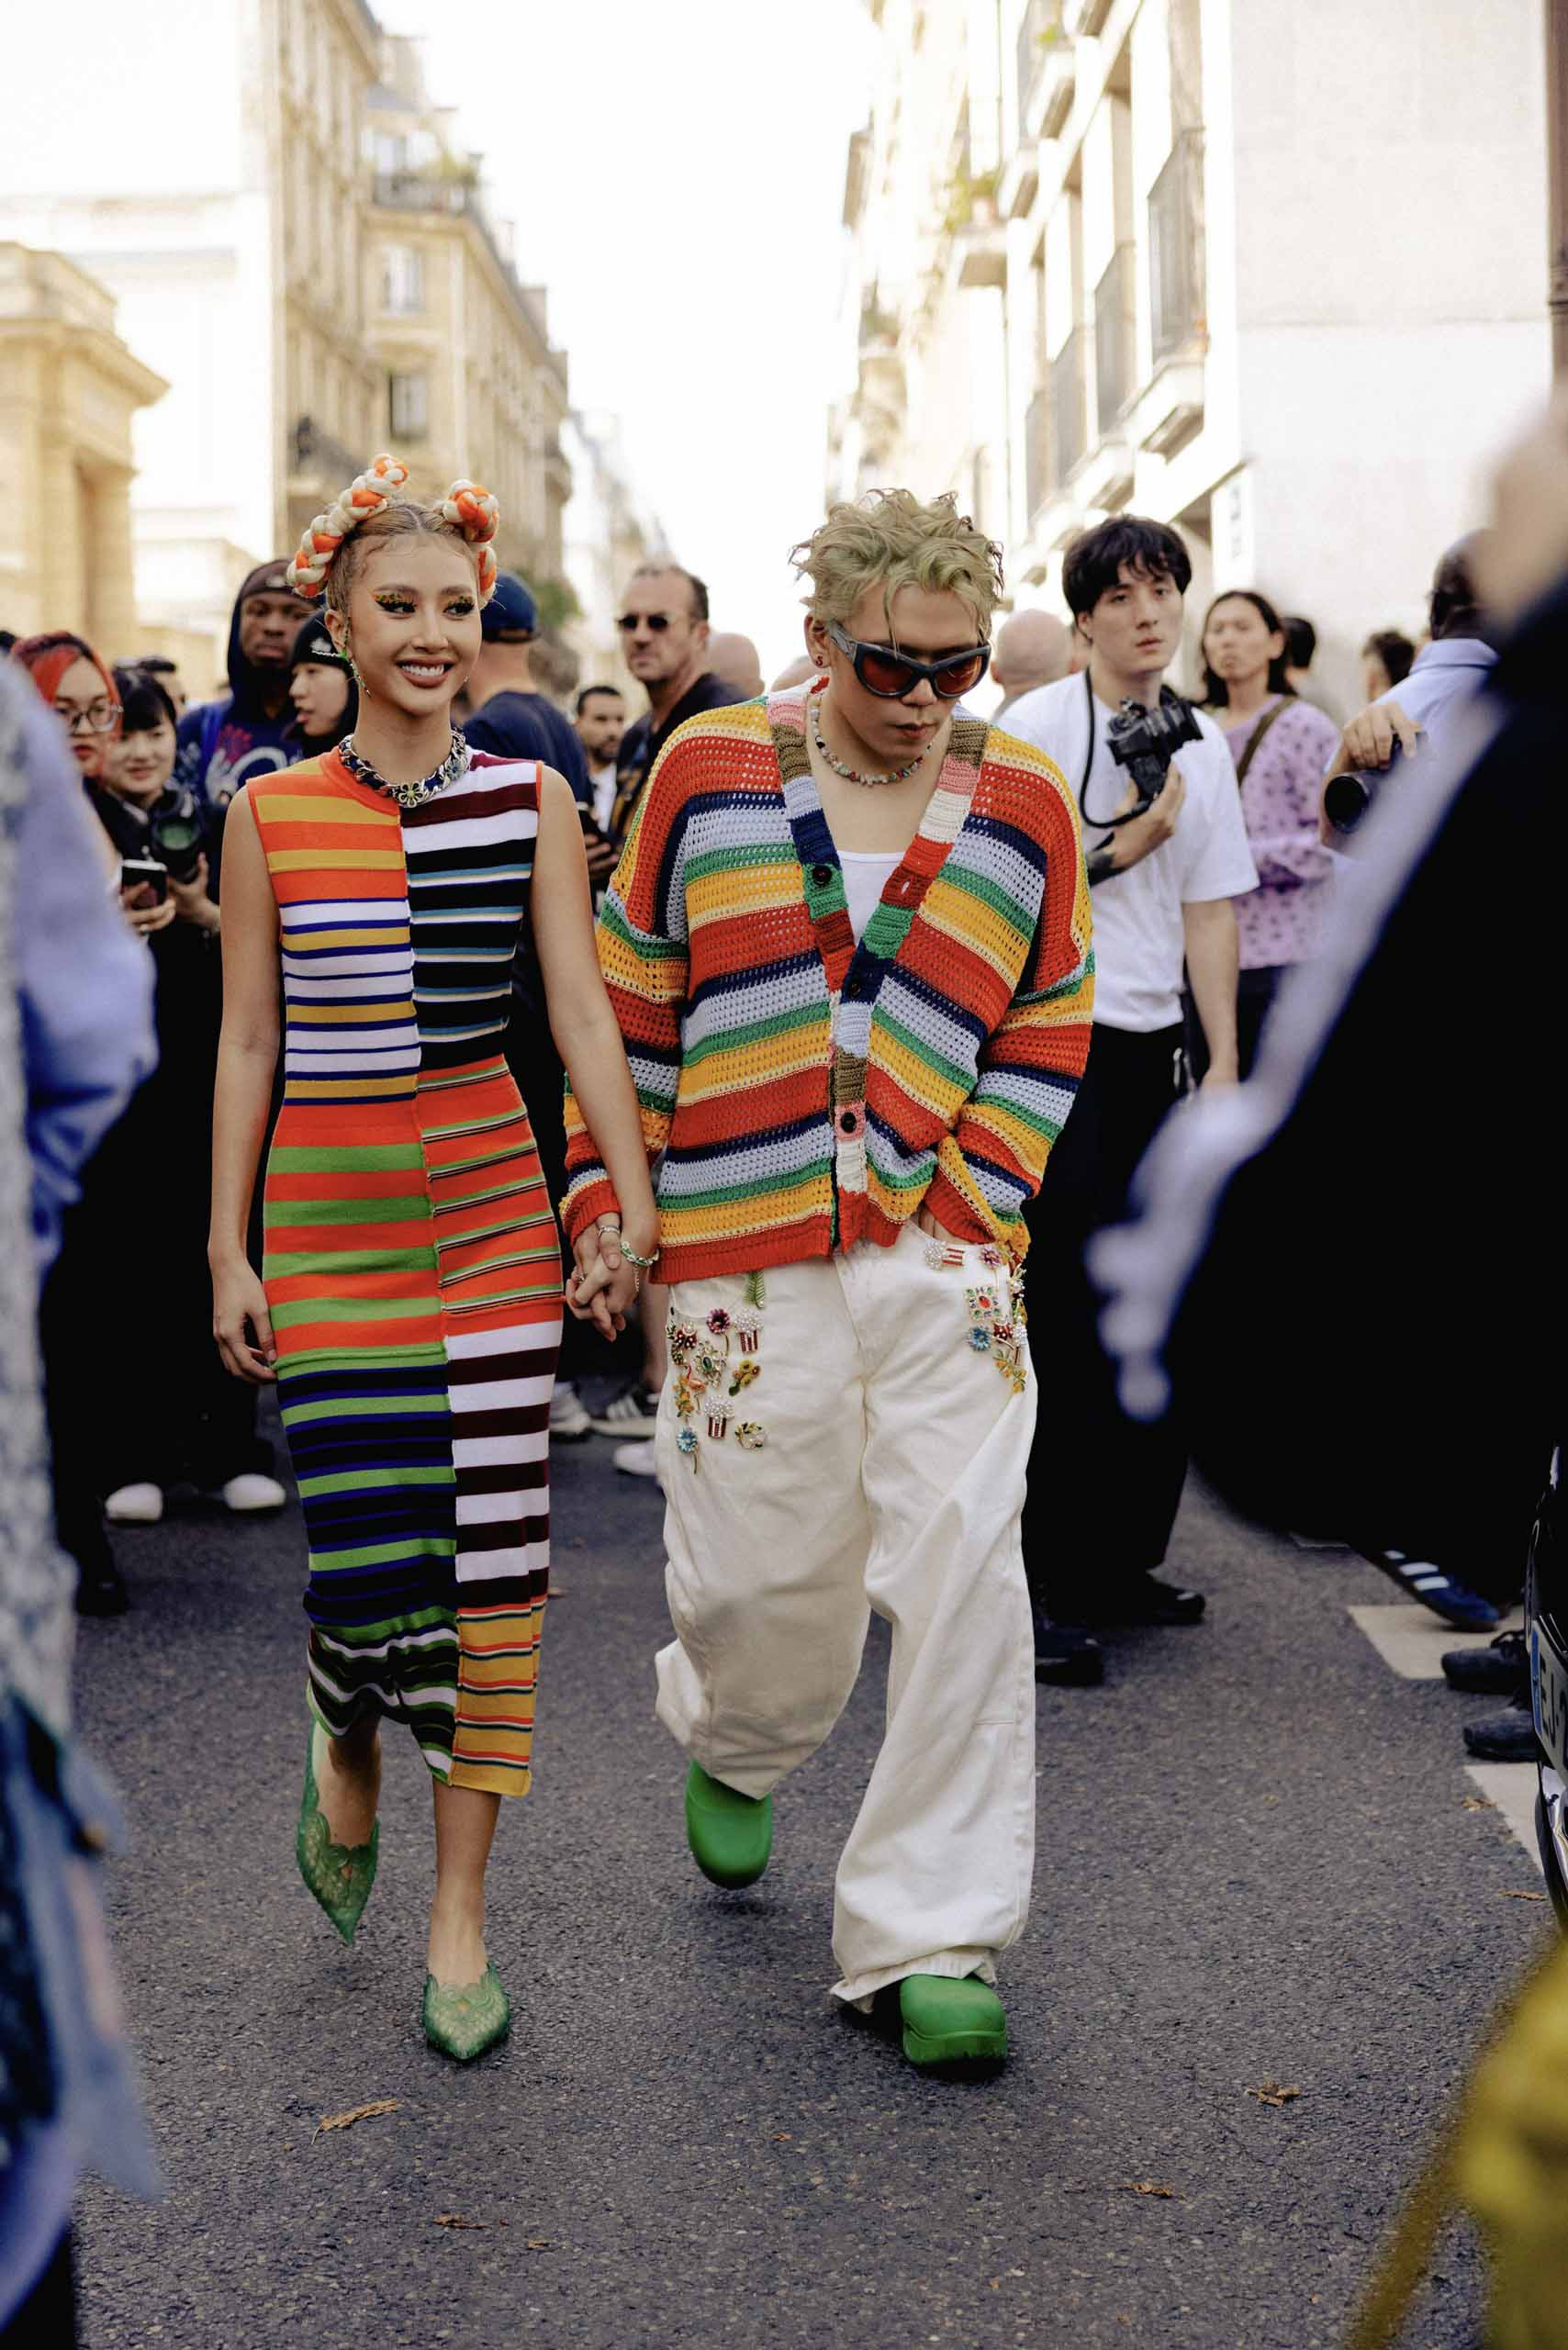 Khoảnh khắc Quỳnh Anh Shyn và Nam Phùng diện đồ đôi, nắm tay nhau ở show Marni lọt ống kính của Tạp chí Vogue